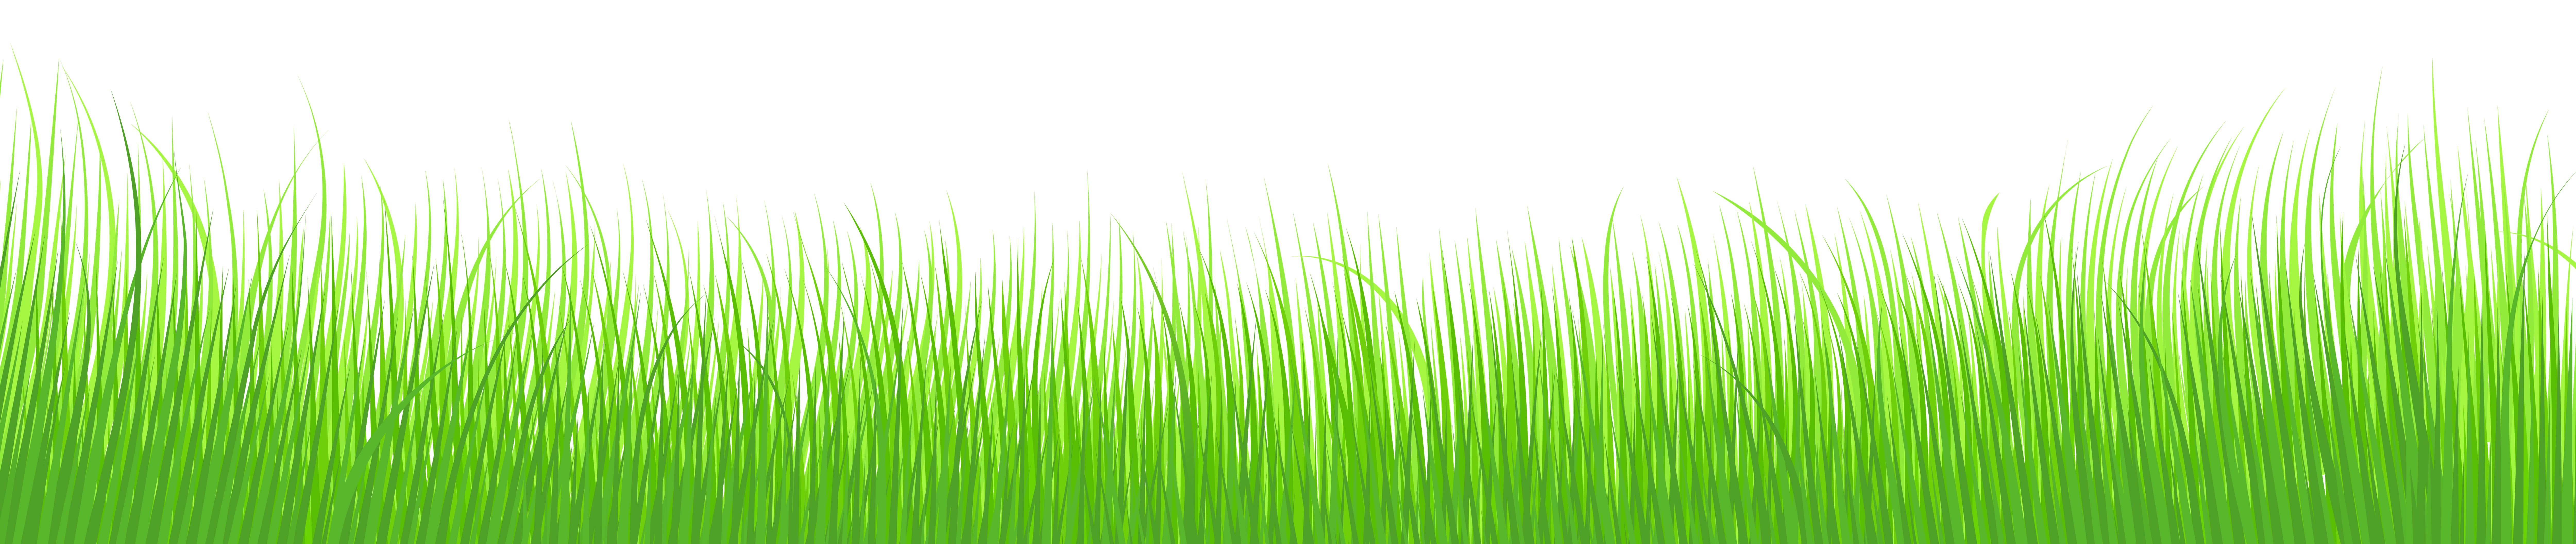 Grass Clipart  Grass Clip Art Image 